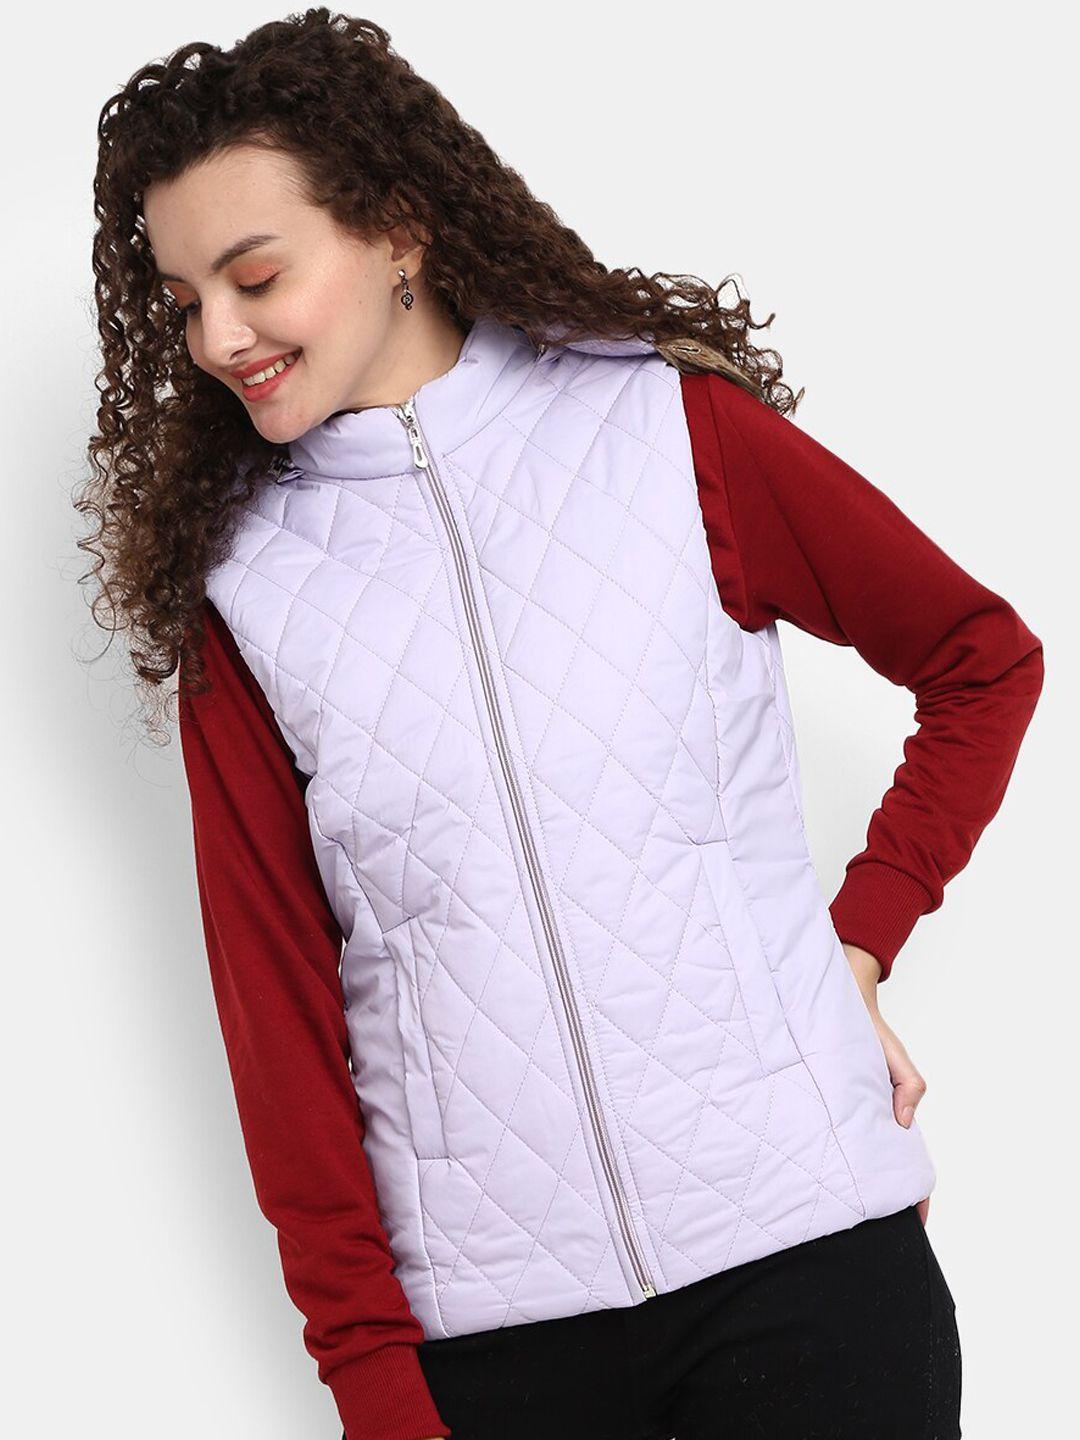 v-mart women lavender outdoor quilted jacket